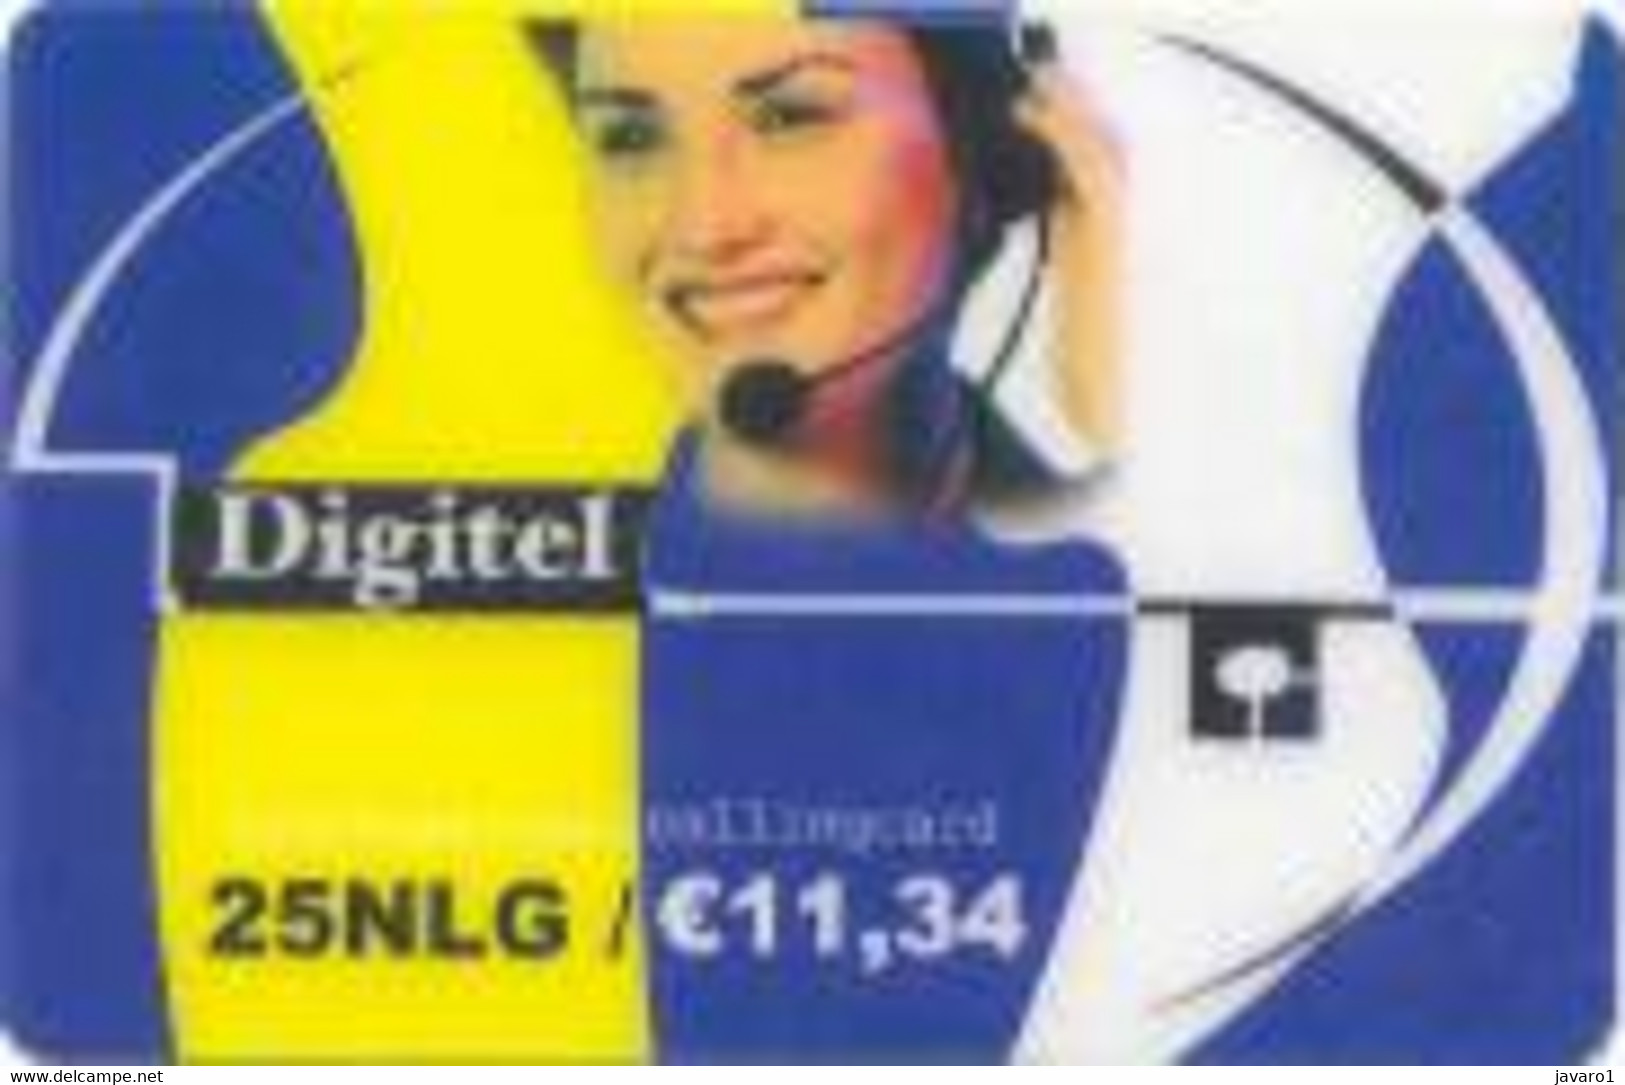 NETHERLAND : NED20 25NLG/e 11,34 DIGITEL Web+Phoning/ WHITE Rev. USED - A Identificar